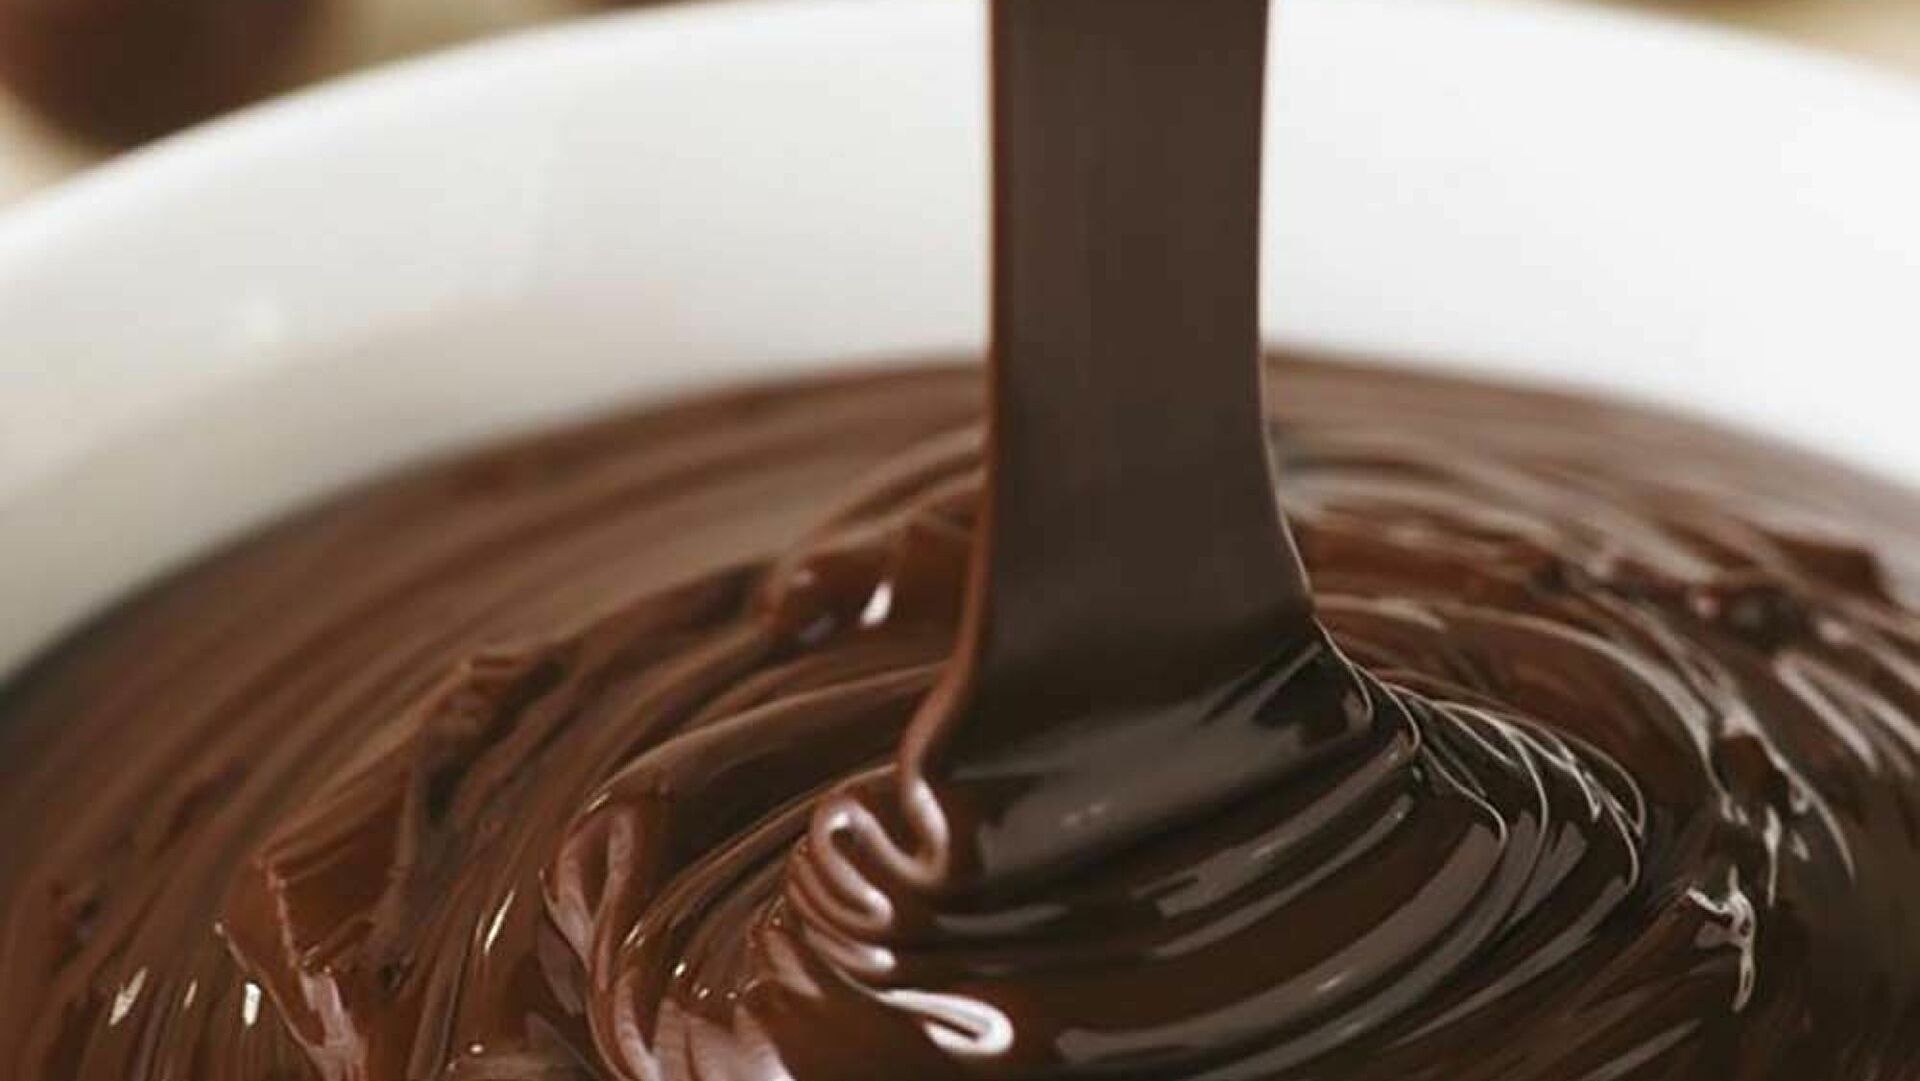 Шоколадный крем молоко какао. Шоколадная глазурь кувертюр. Кувертюр шоколадная шоколадная глазурь. Шоколадная глазурь ганаш. Крем ганаш.